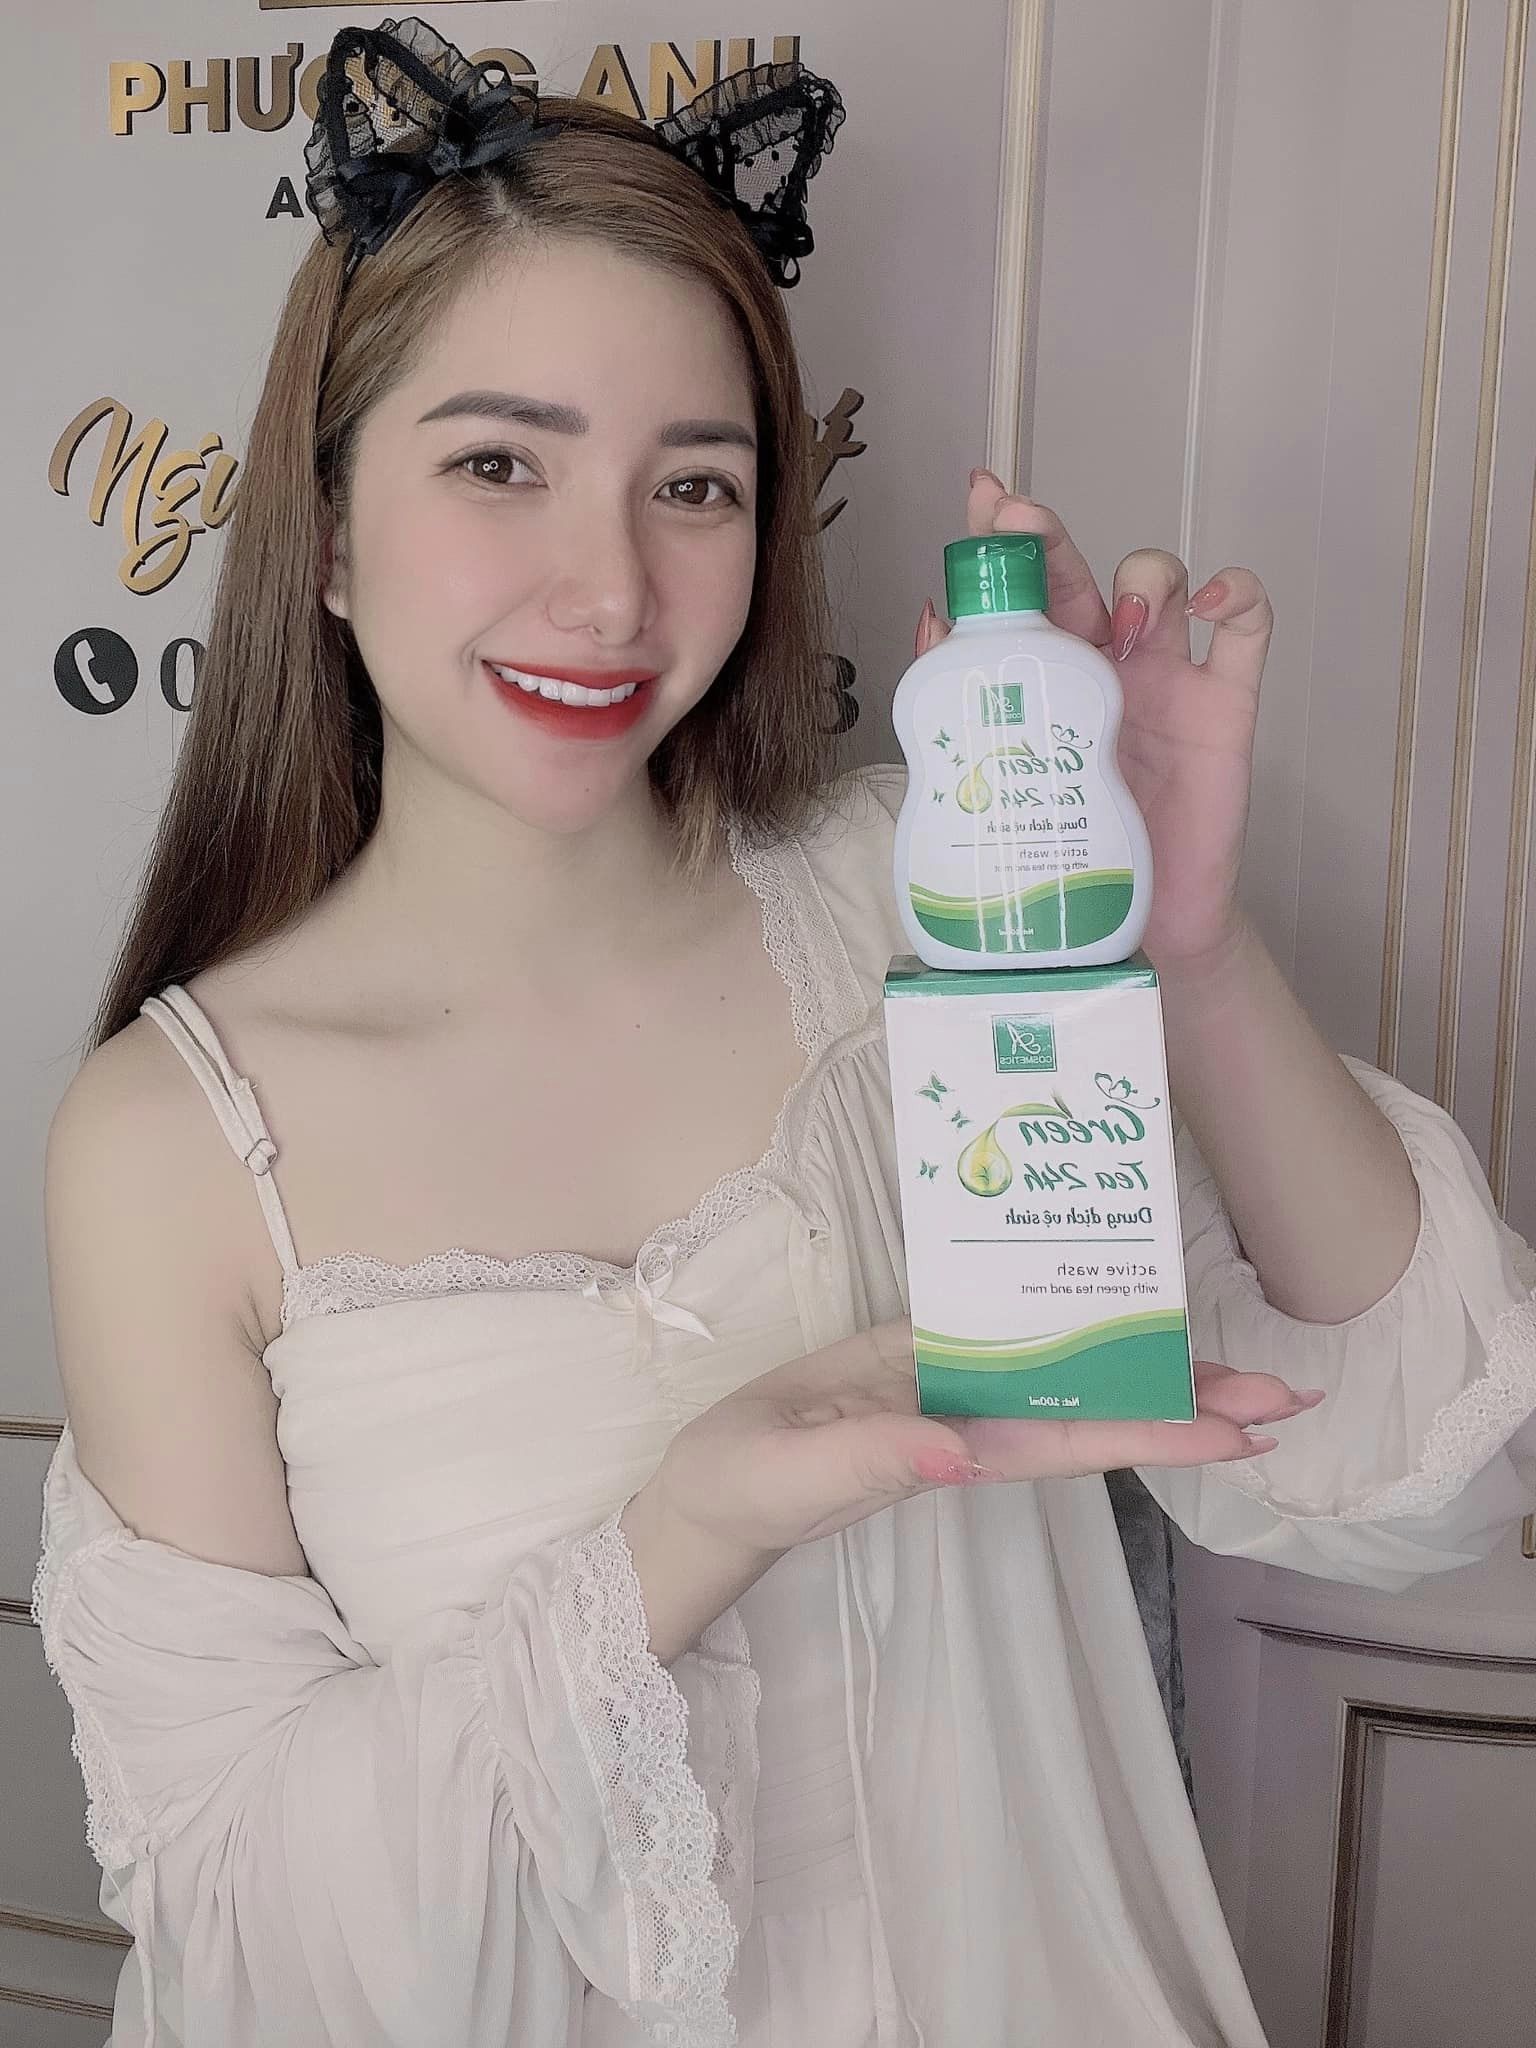 Dung dịch vệ sinh green tea 24h A Cosmetics Phương Anh